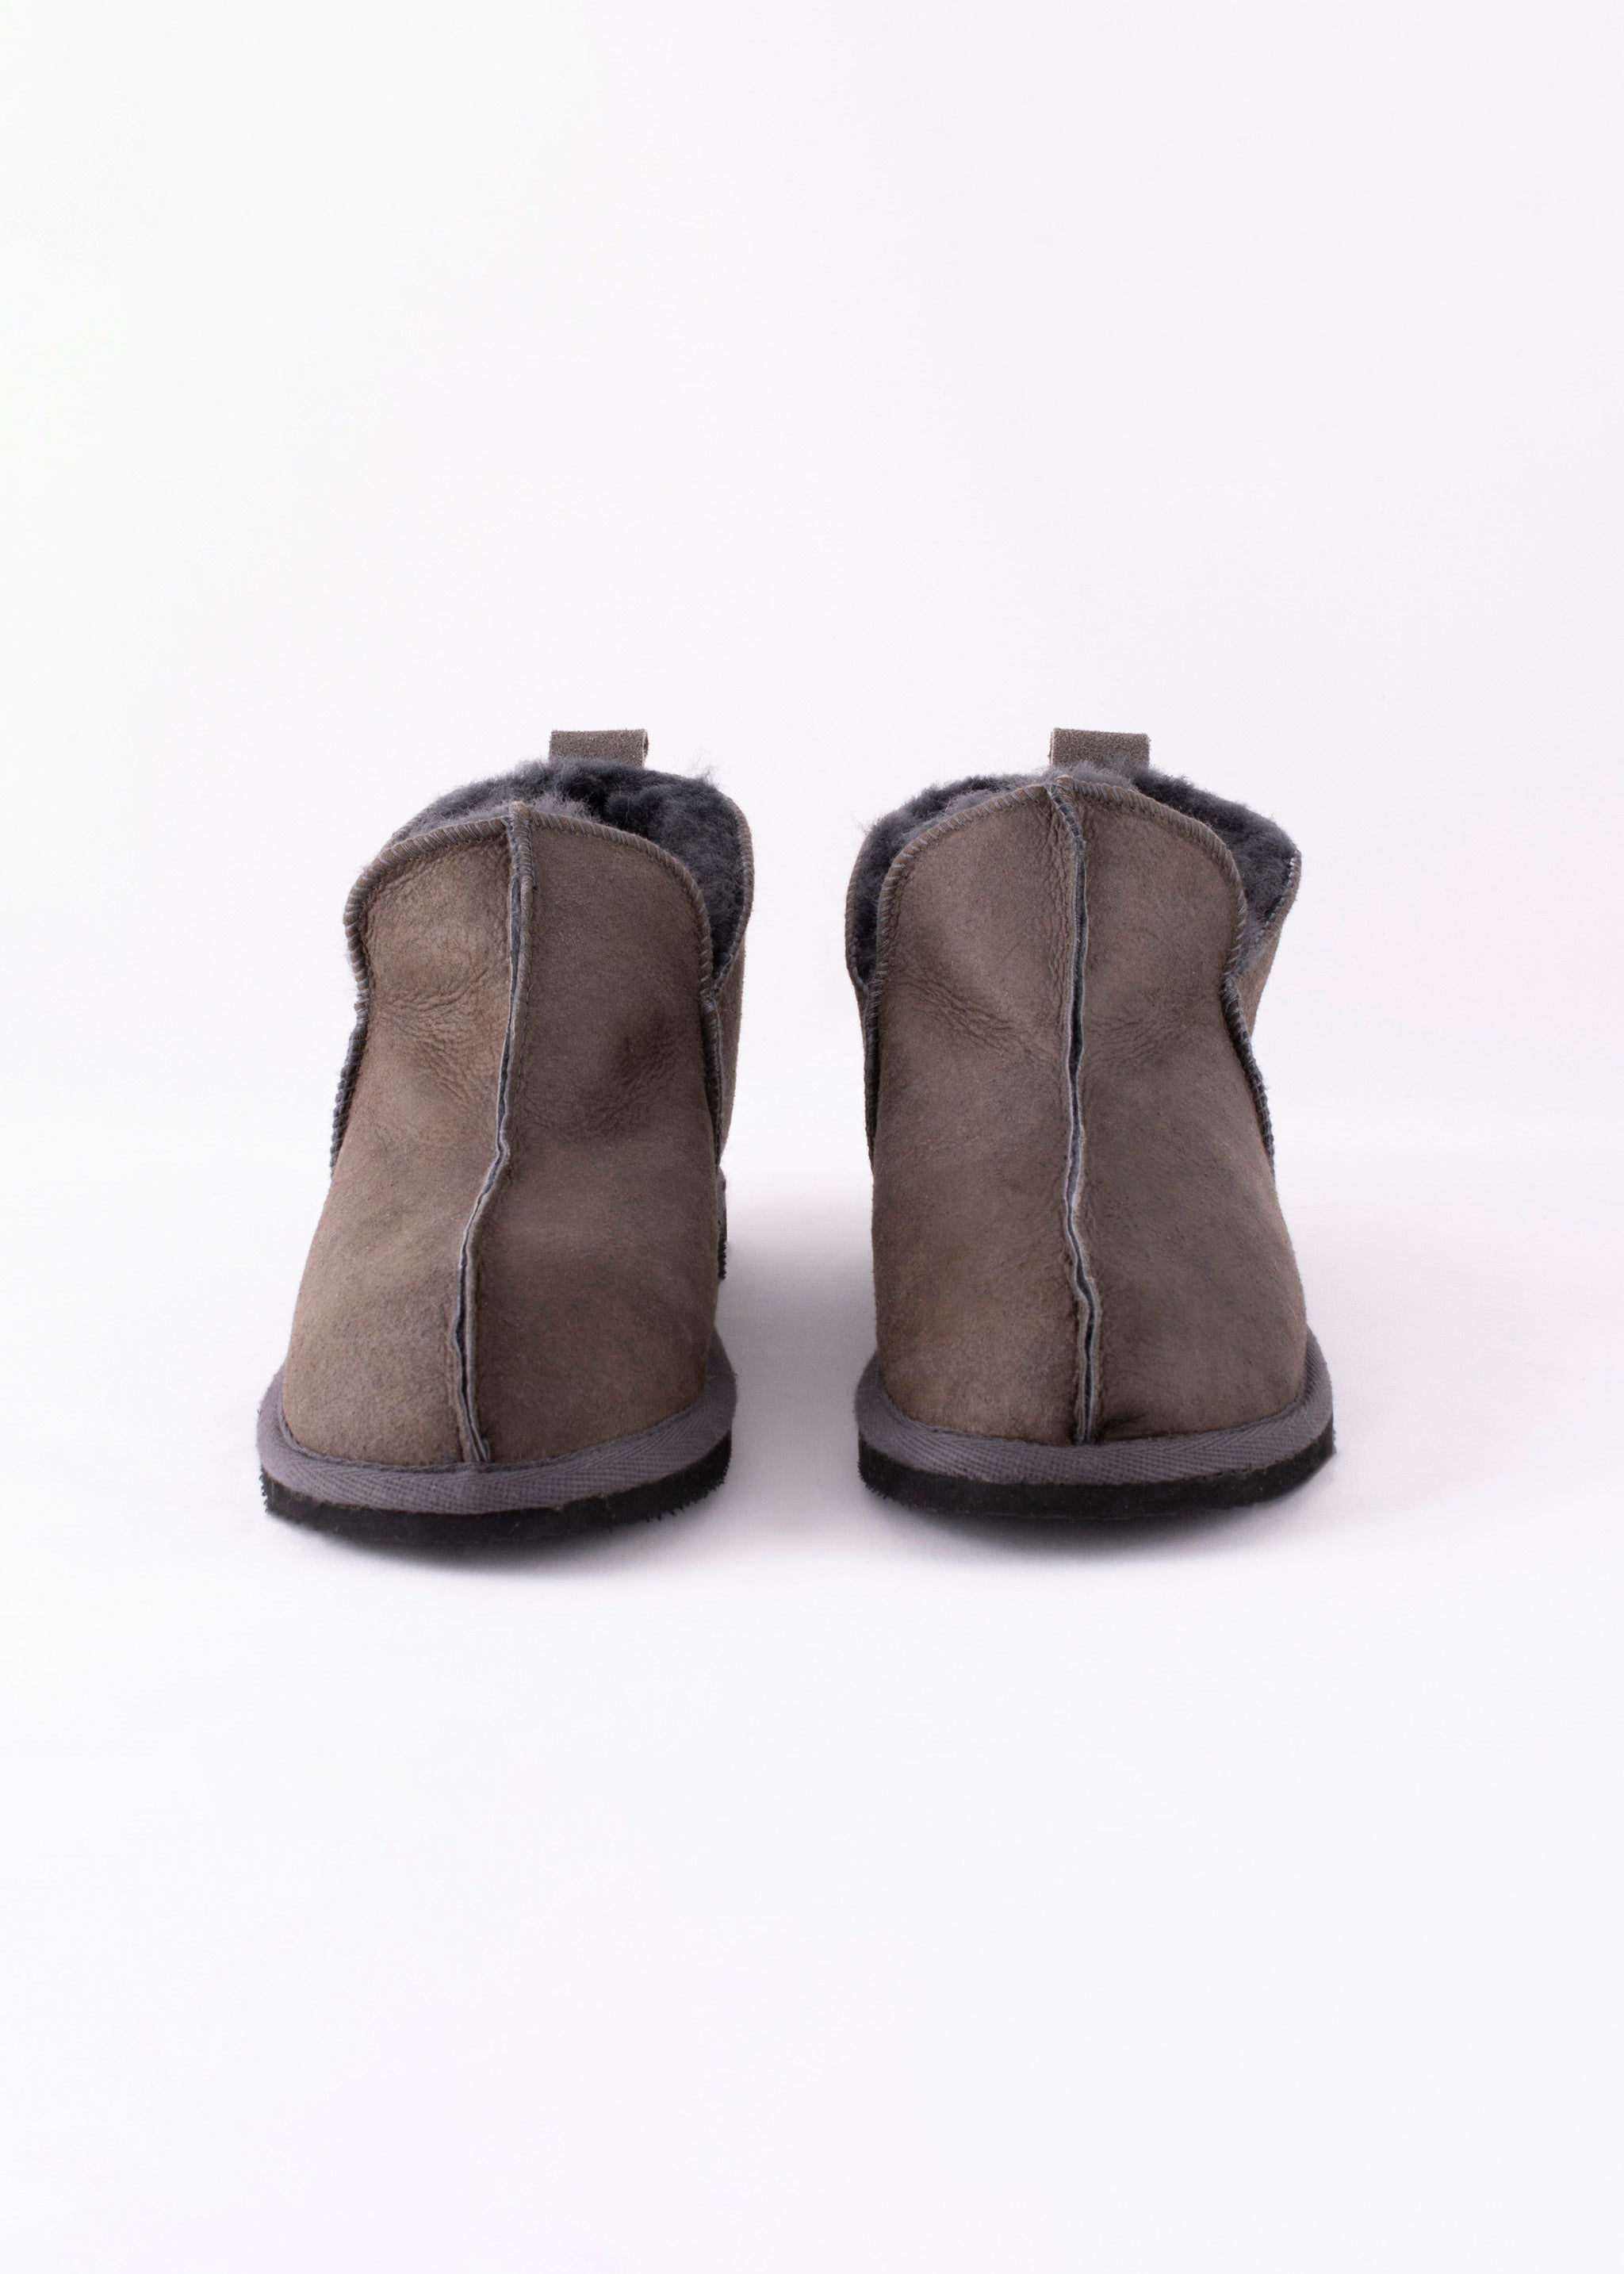 Anton Mens Sheepskin Boot Slippers - Antique Asphalt